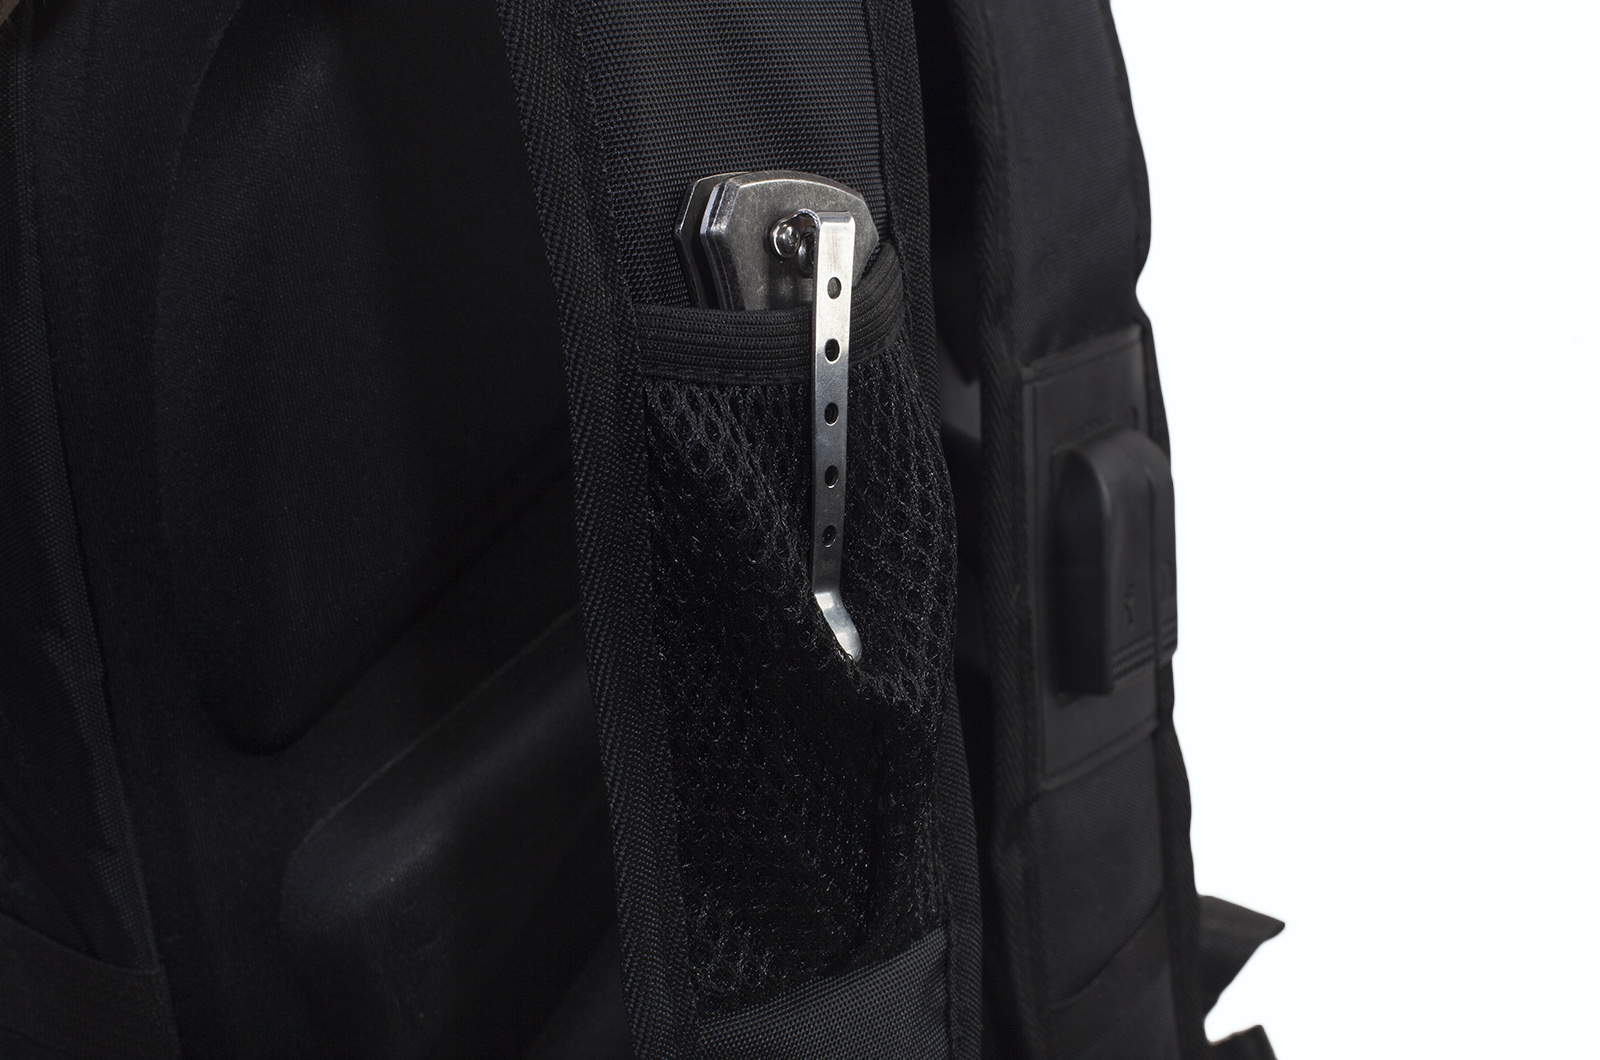 Многофункциональный черный рюкзак  шевроном Каратель (36 - 55 л) 